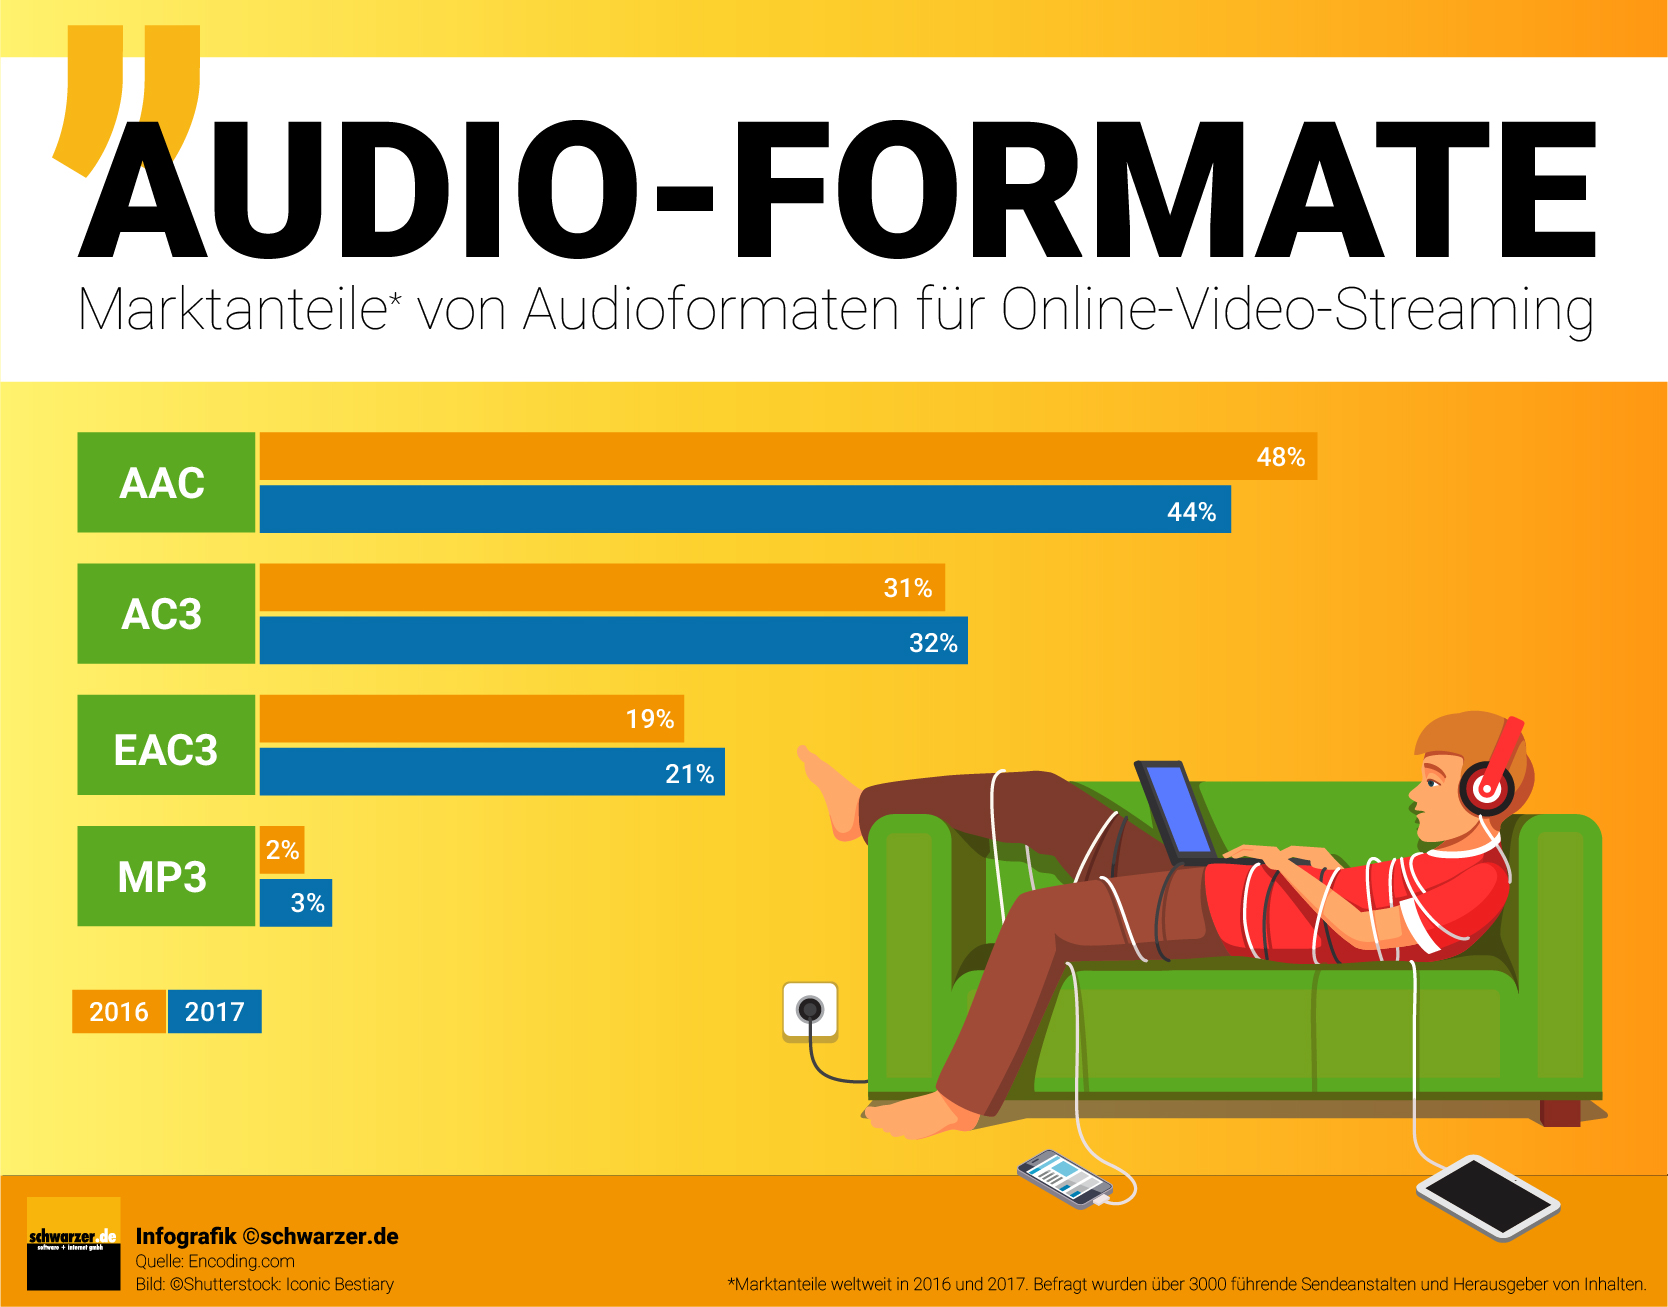 Infografik: Marktanteile von Audioformaten für Online Video Streaming 2016 und 2017 welltweit.